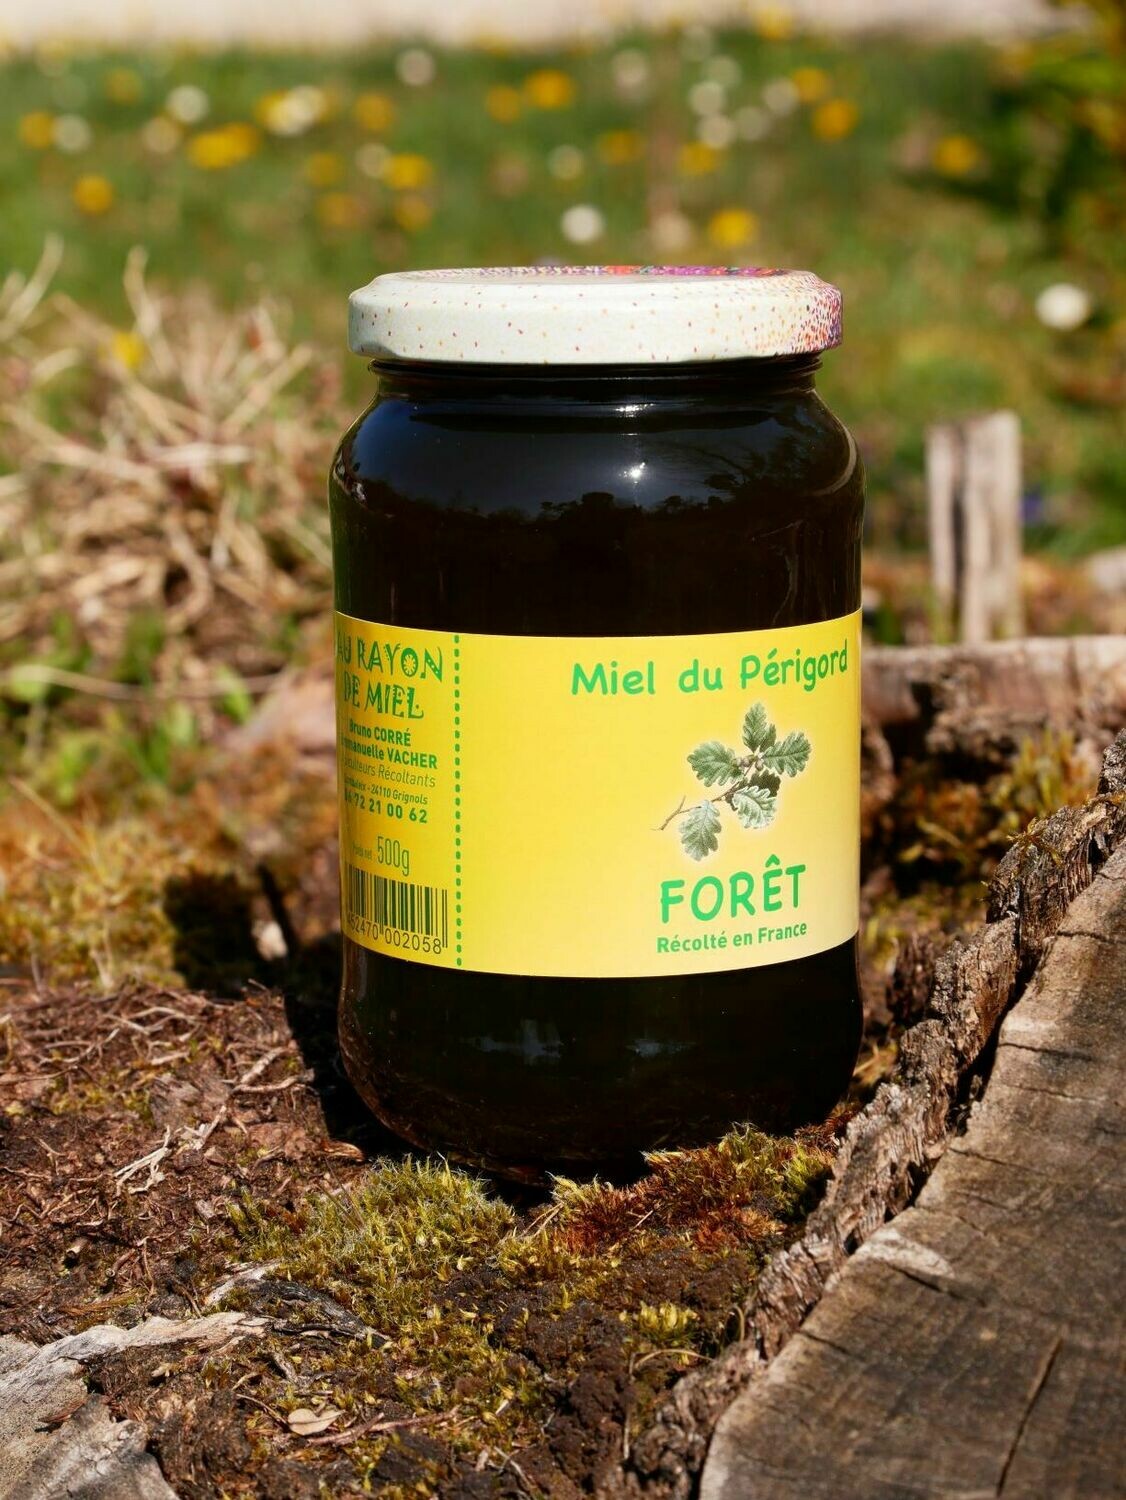 Acheter Miel de Forêt — 500 g